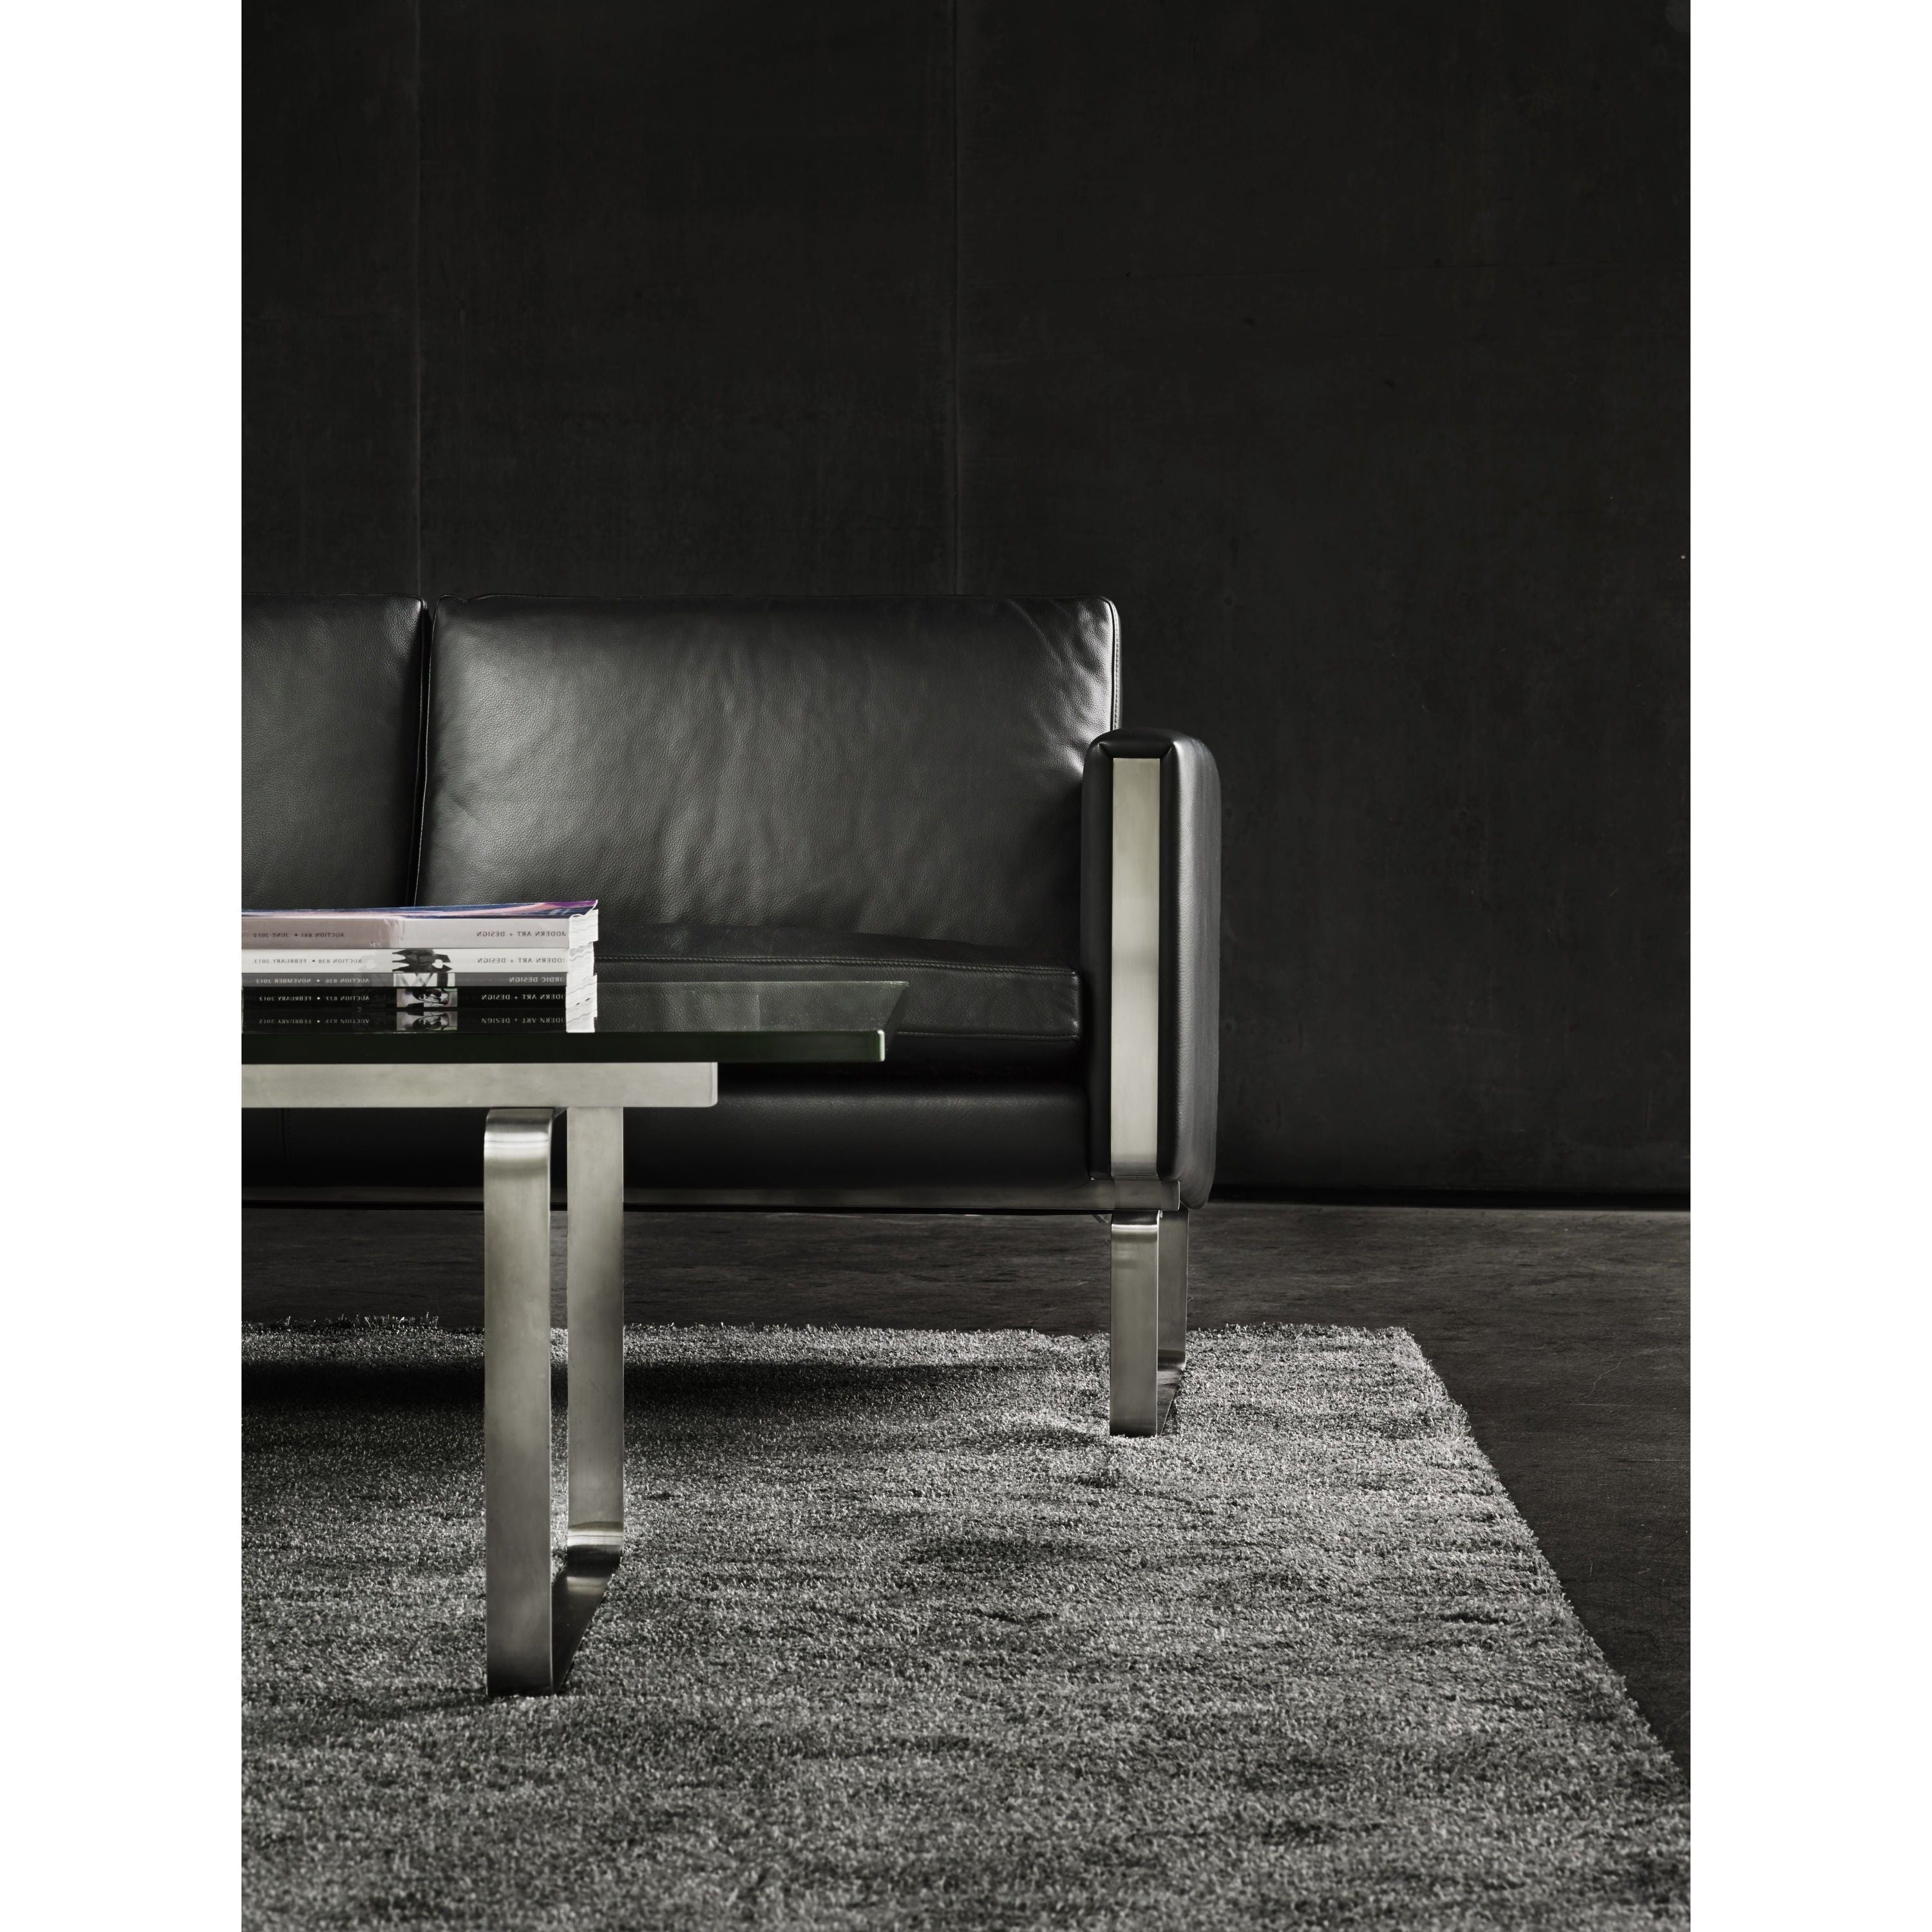 Carl Hansen CH101 Lounge stoel, staal/donkerbruin leer (Thor 306)